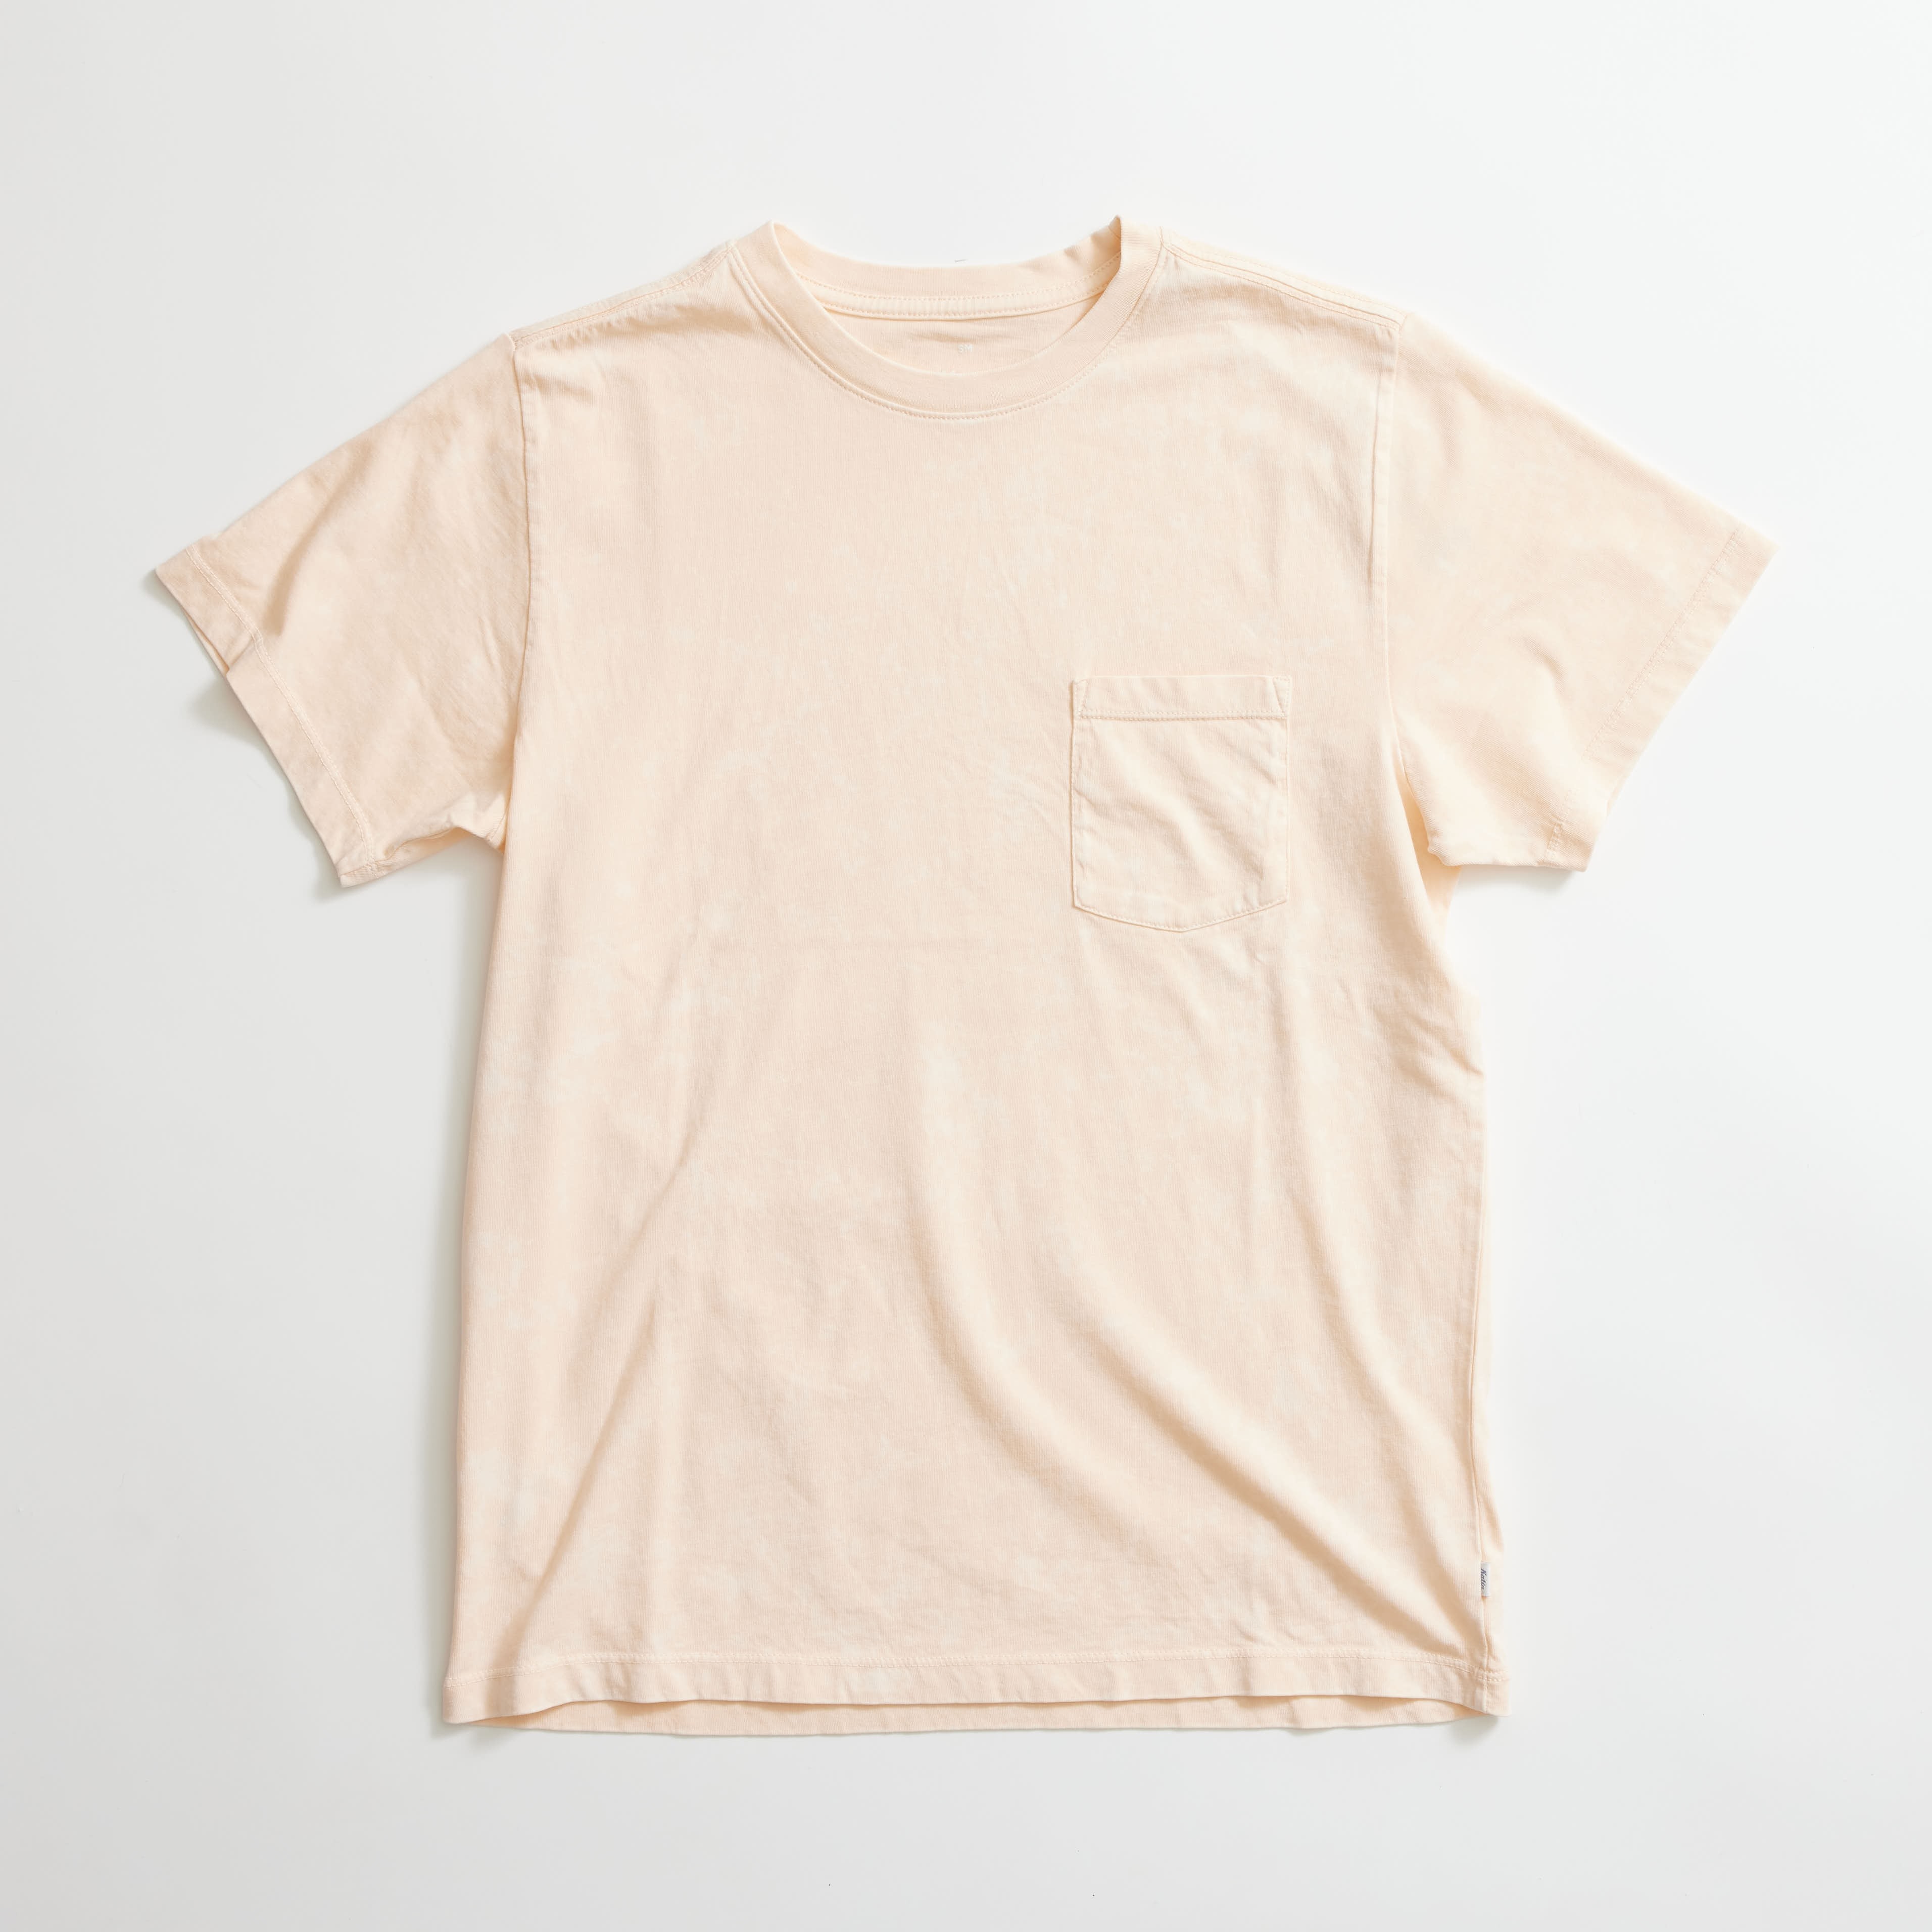 KATIN Base Tee (Pink Mineral) Short Sleeve T-Shirts at The Stockist